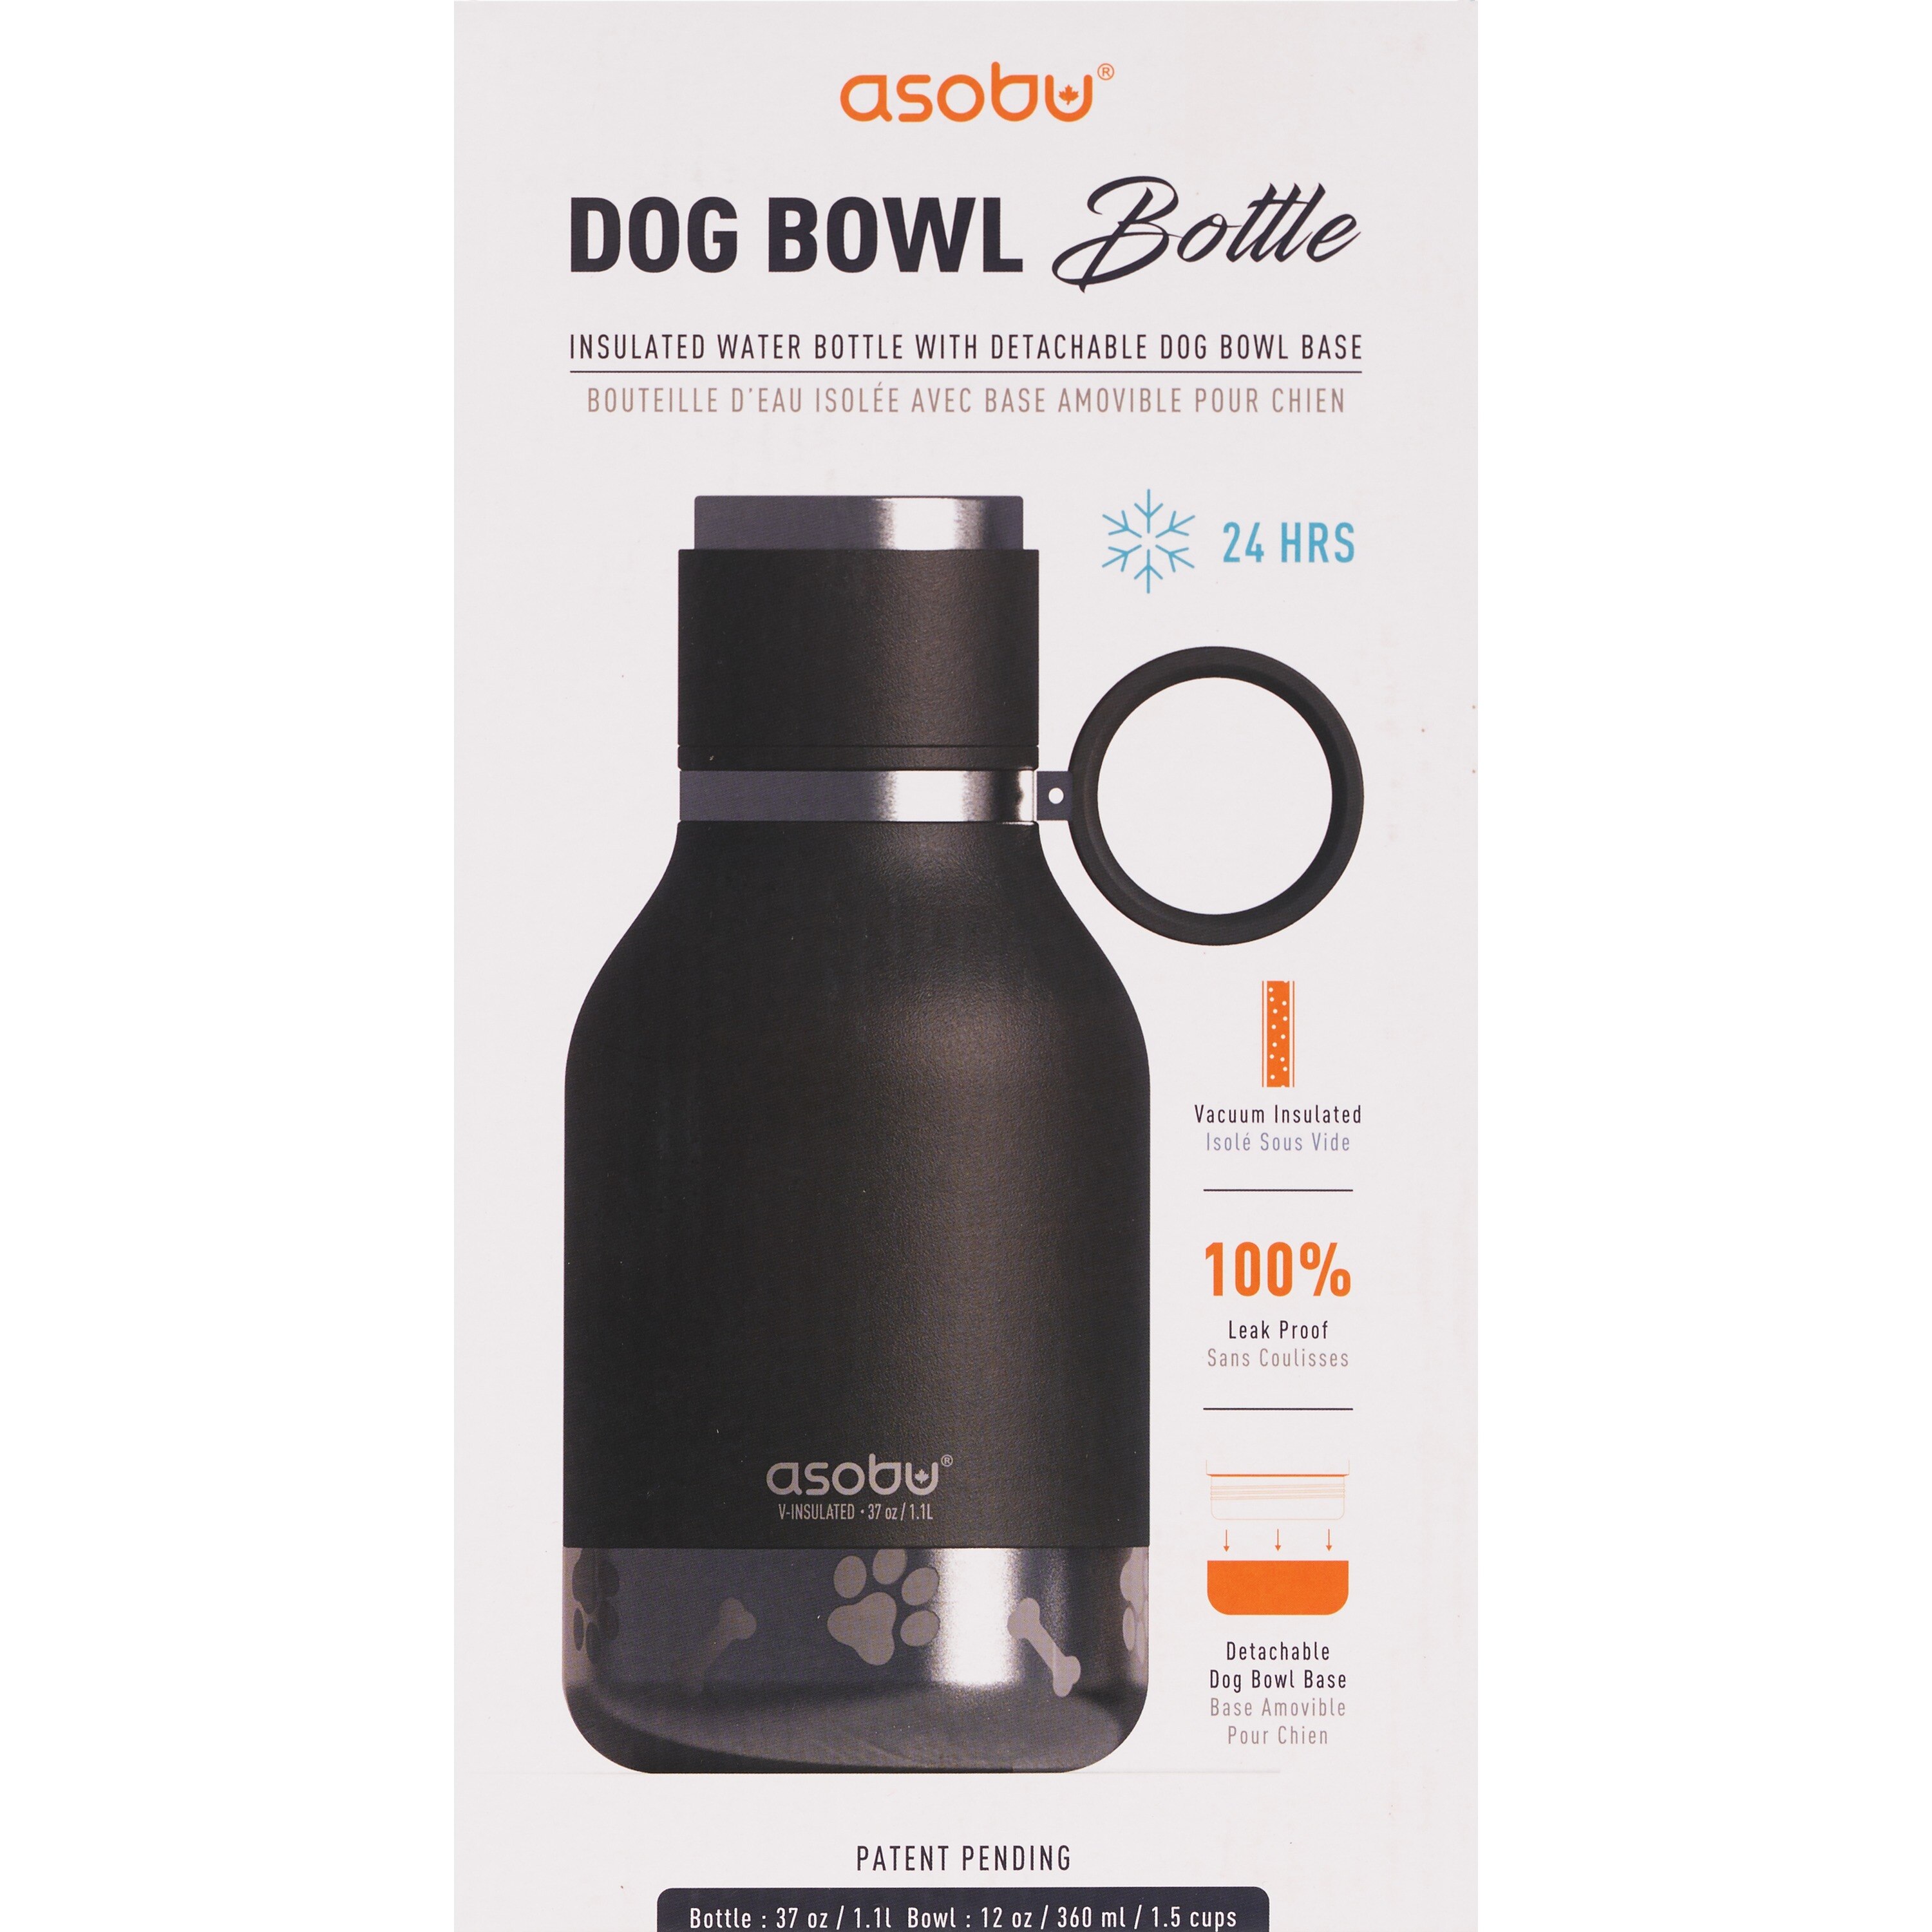 PURINA, Asobu Dog Bowl Bottle